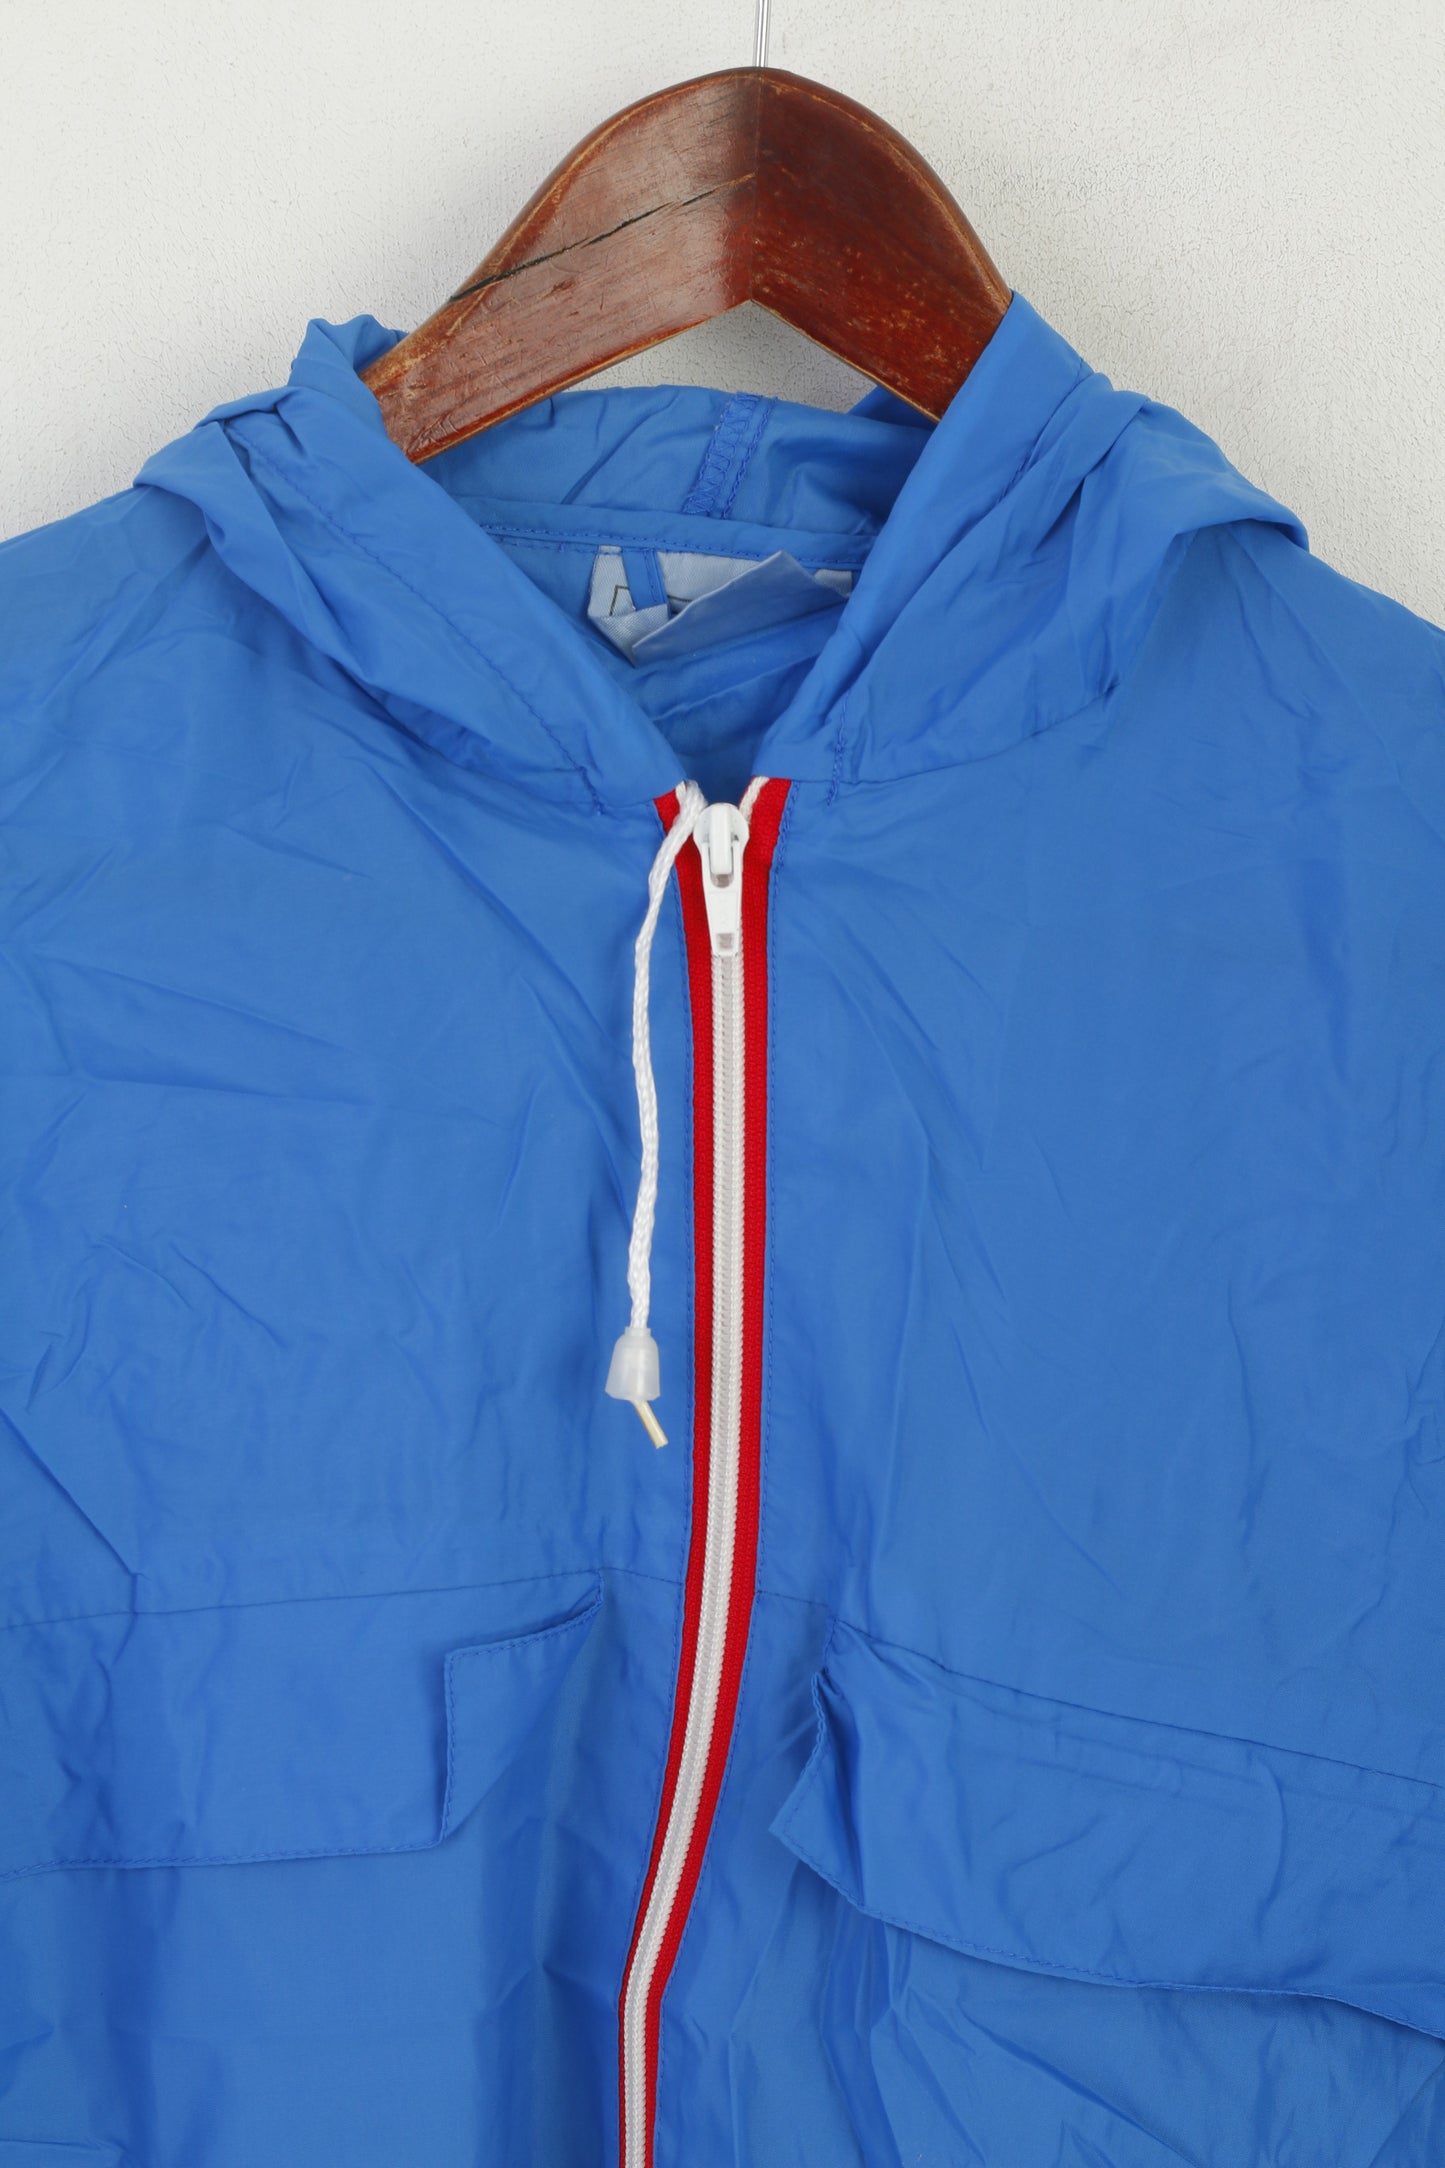 Vintage Men S Jacket Blue Nylon Waterproof Hooded Full Zip Rain Top